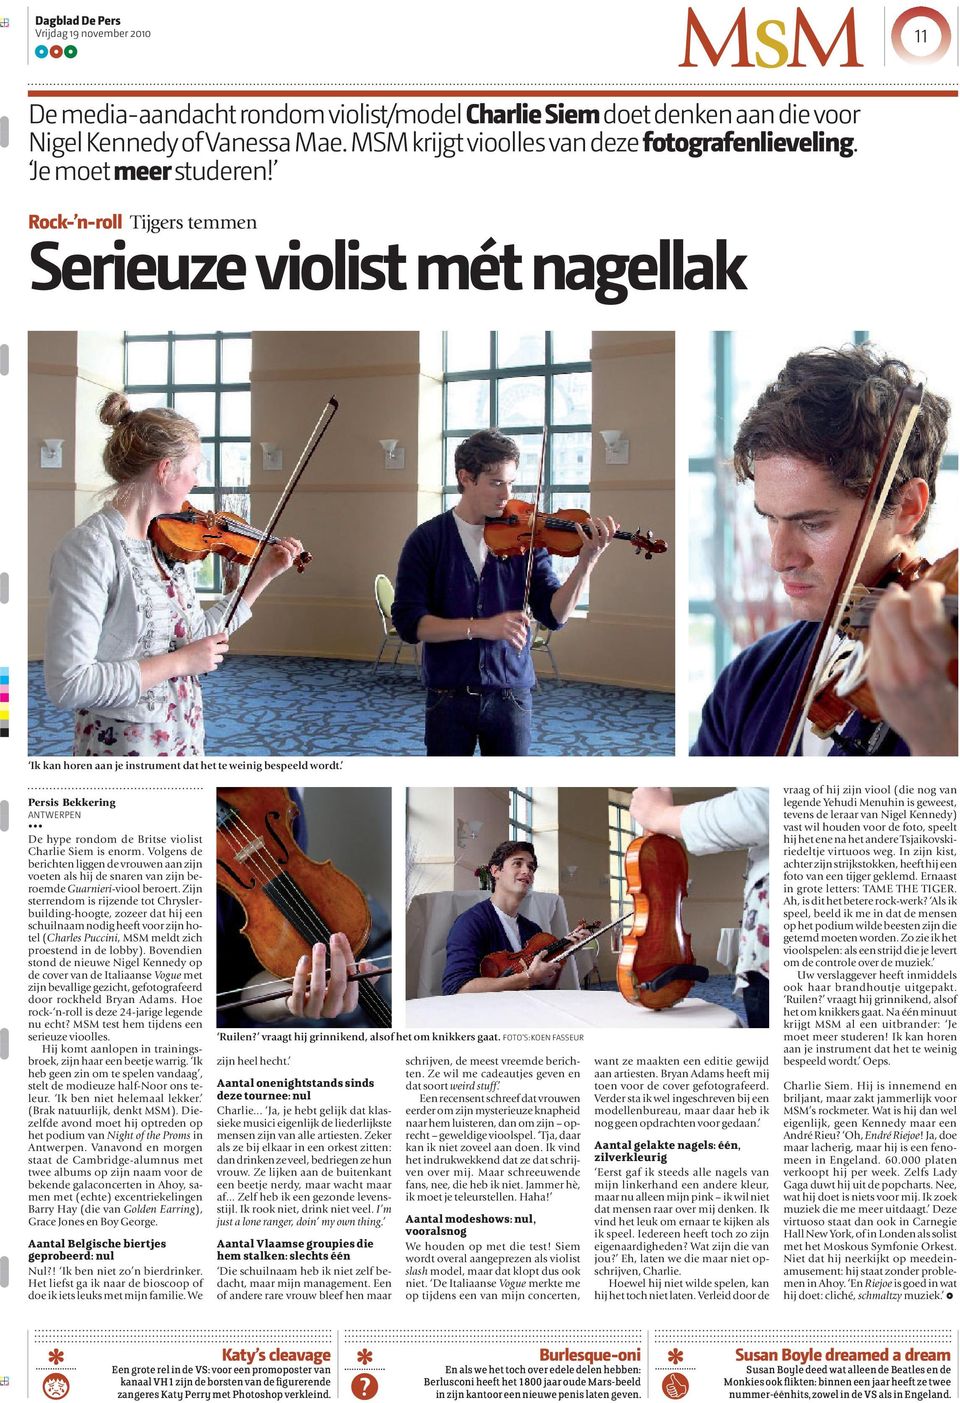 Persis Bekkering ANTWERPEN De hype rondom de Britse violist Charlie Siem is enorm. Volgens de berichten liggen de vrouwen aan zijn voeten als hij de snaren van zijn beroemde Guarnieri-viool beroert.